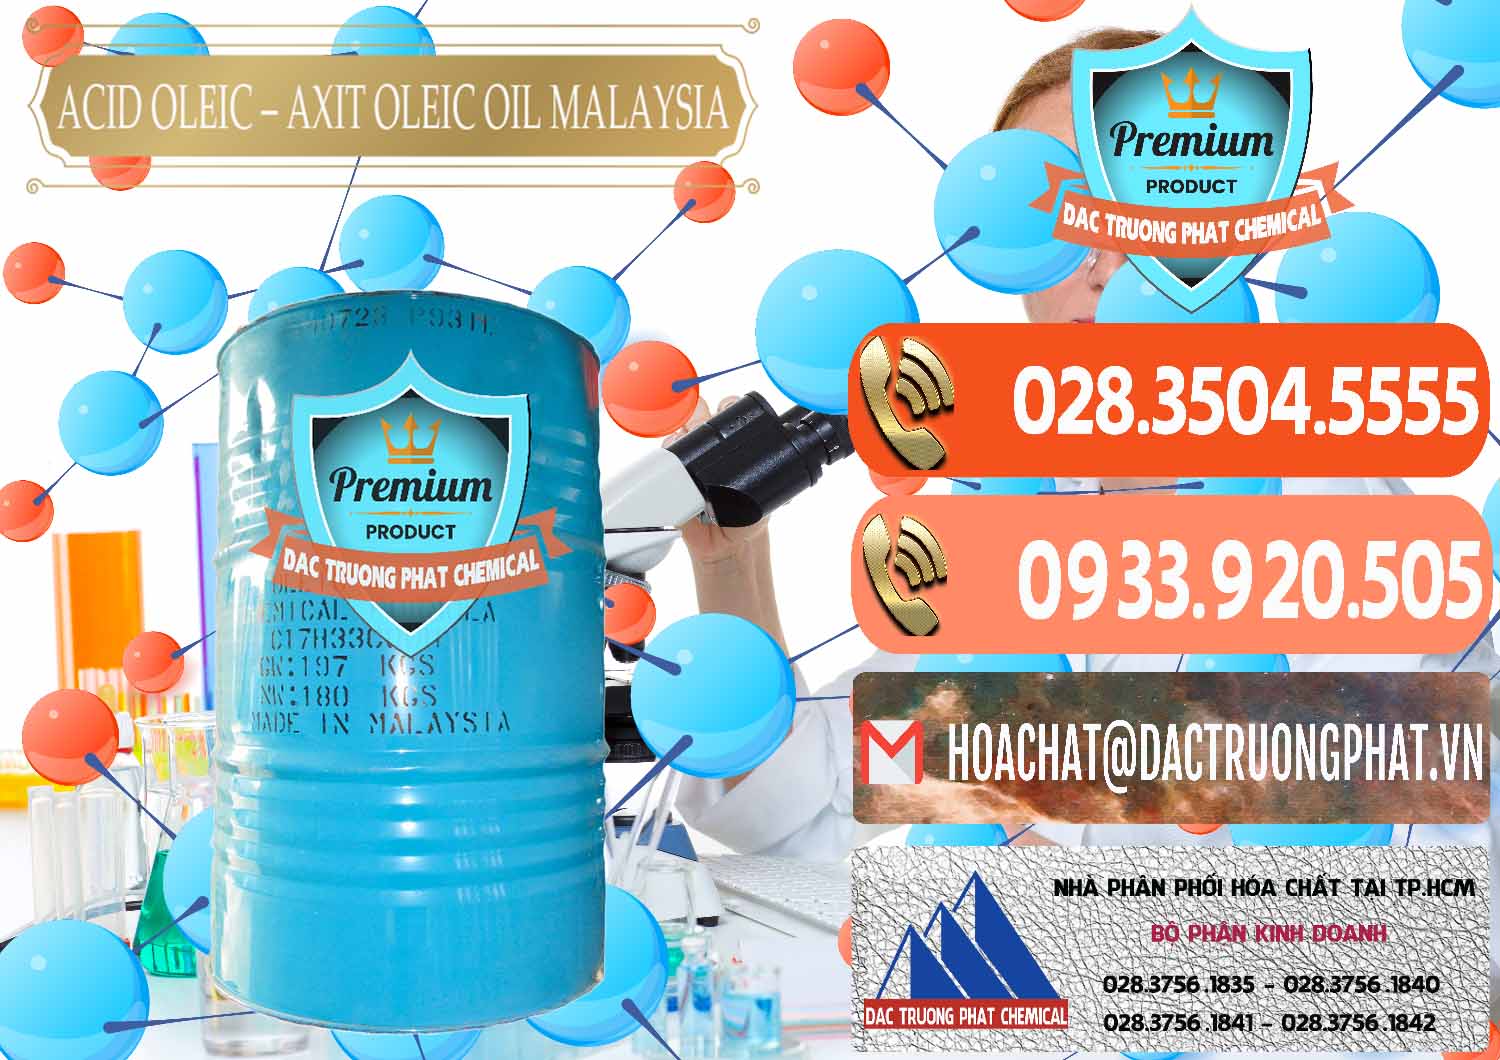 Cty chuyên bán và cung cấp Acid Oleic – Axit Oleic Oil Malaysia - 0013 - Đơn vị chuyên nhập khẩu ( cung cấp ) hóa chất tại TP.HCM - hoachatmientay.com